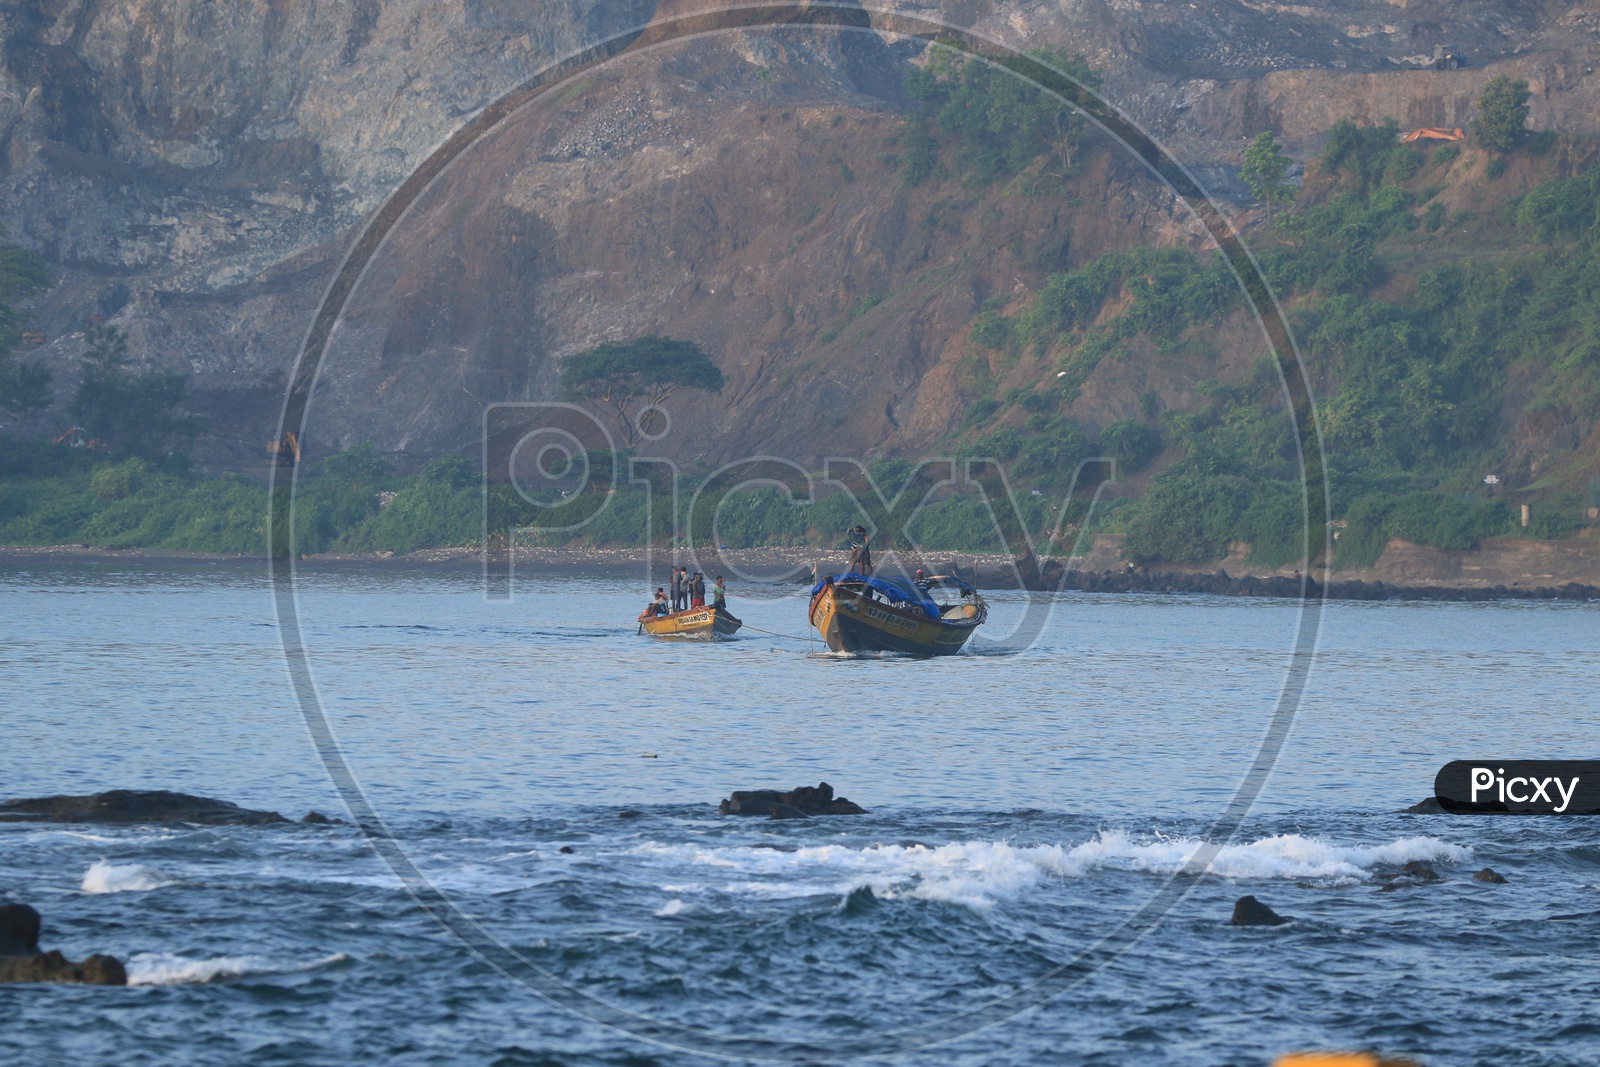 Fishing boats at Port Blair, Andaman and Nicobar Islands